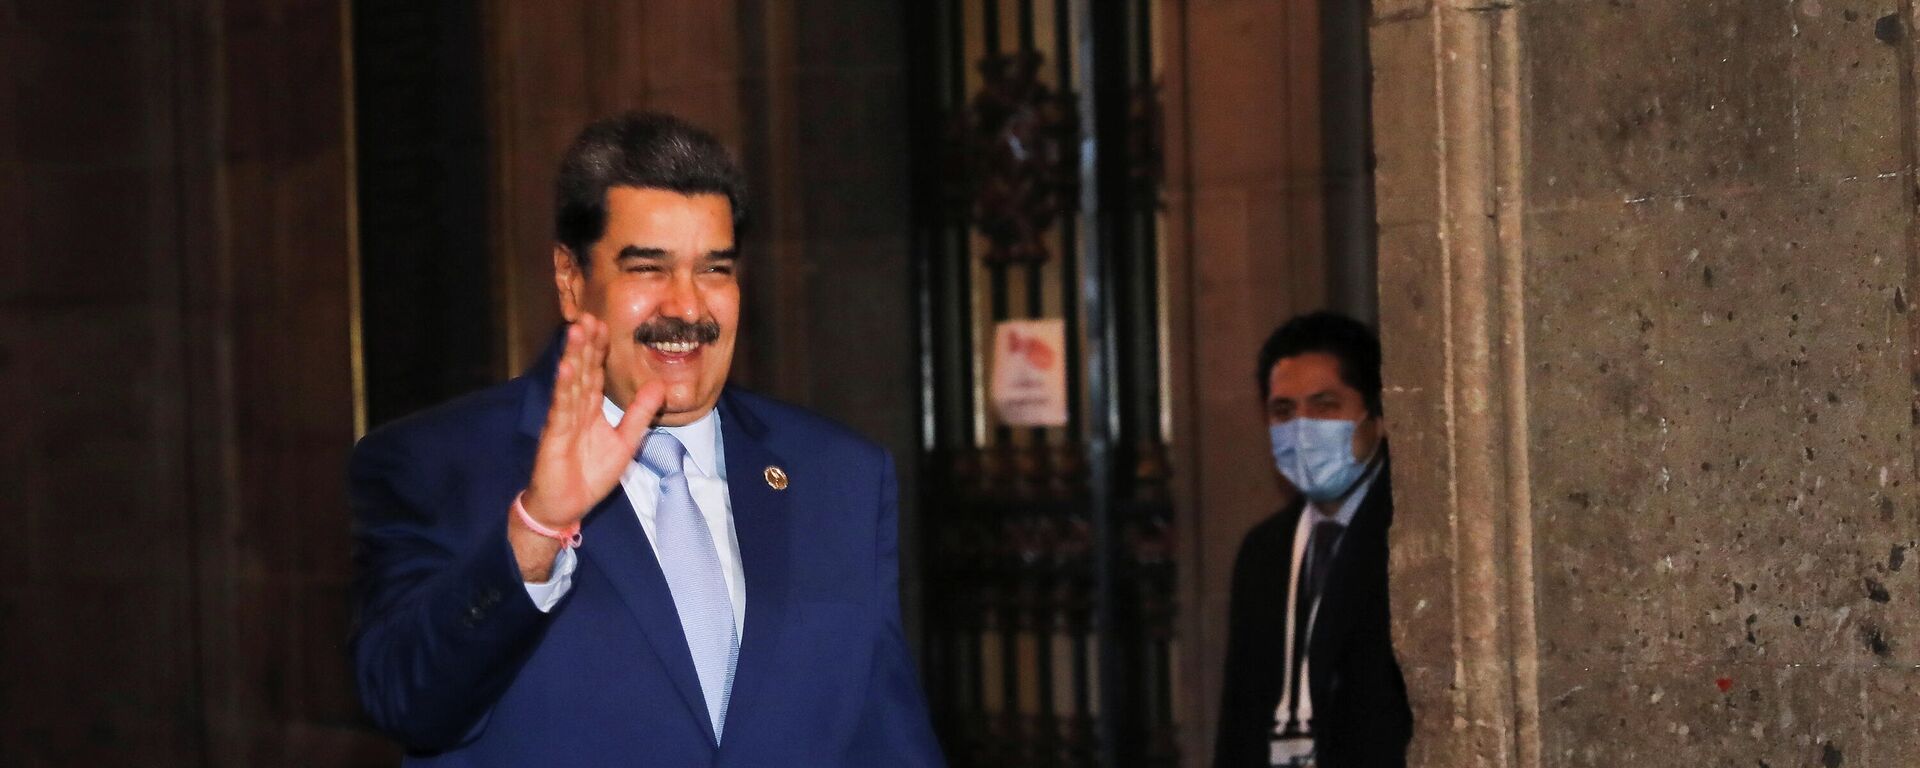 El presidente de Venezuela, Nicolás Maduro, en la VI Cumbre de la Comunidad de Estados Latinoamericanos y Caribeños (CELAC), Ciudad de México, México, 18 de septiembre de 2021 - Sputnik Mundo, 1920, 18.09.2021